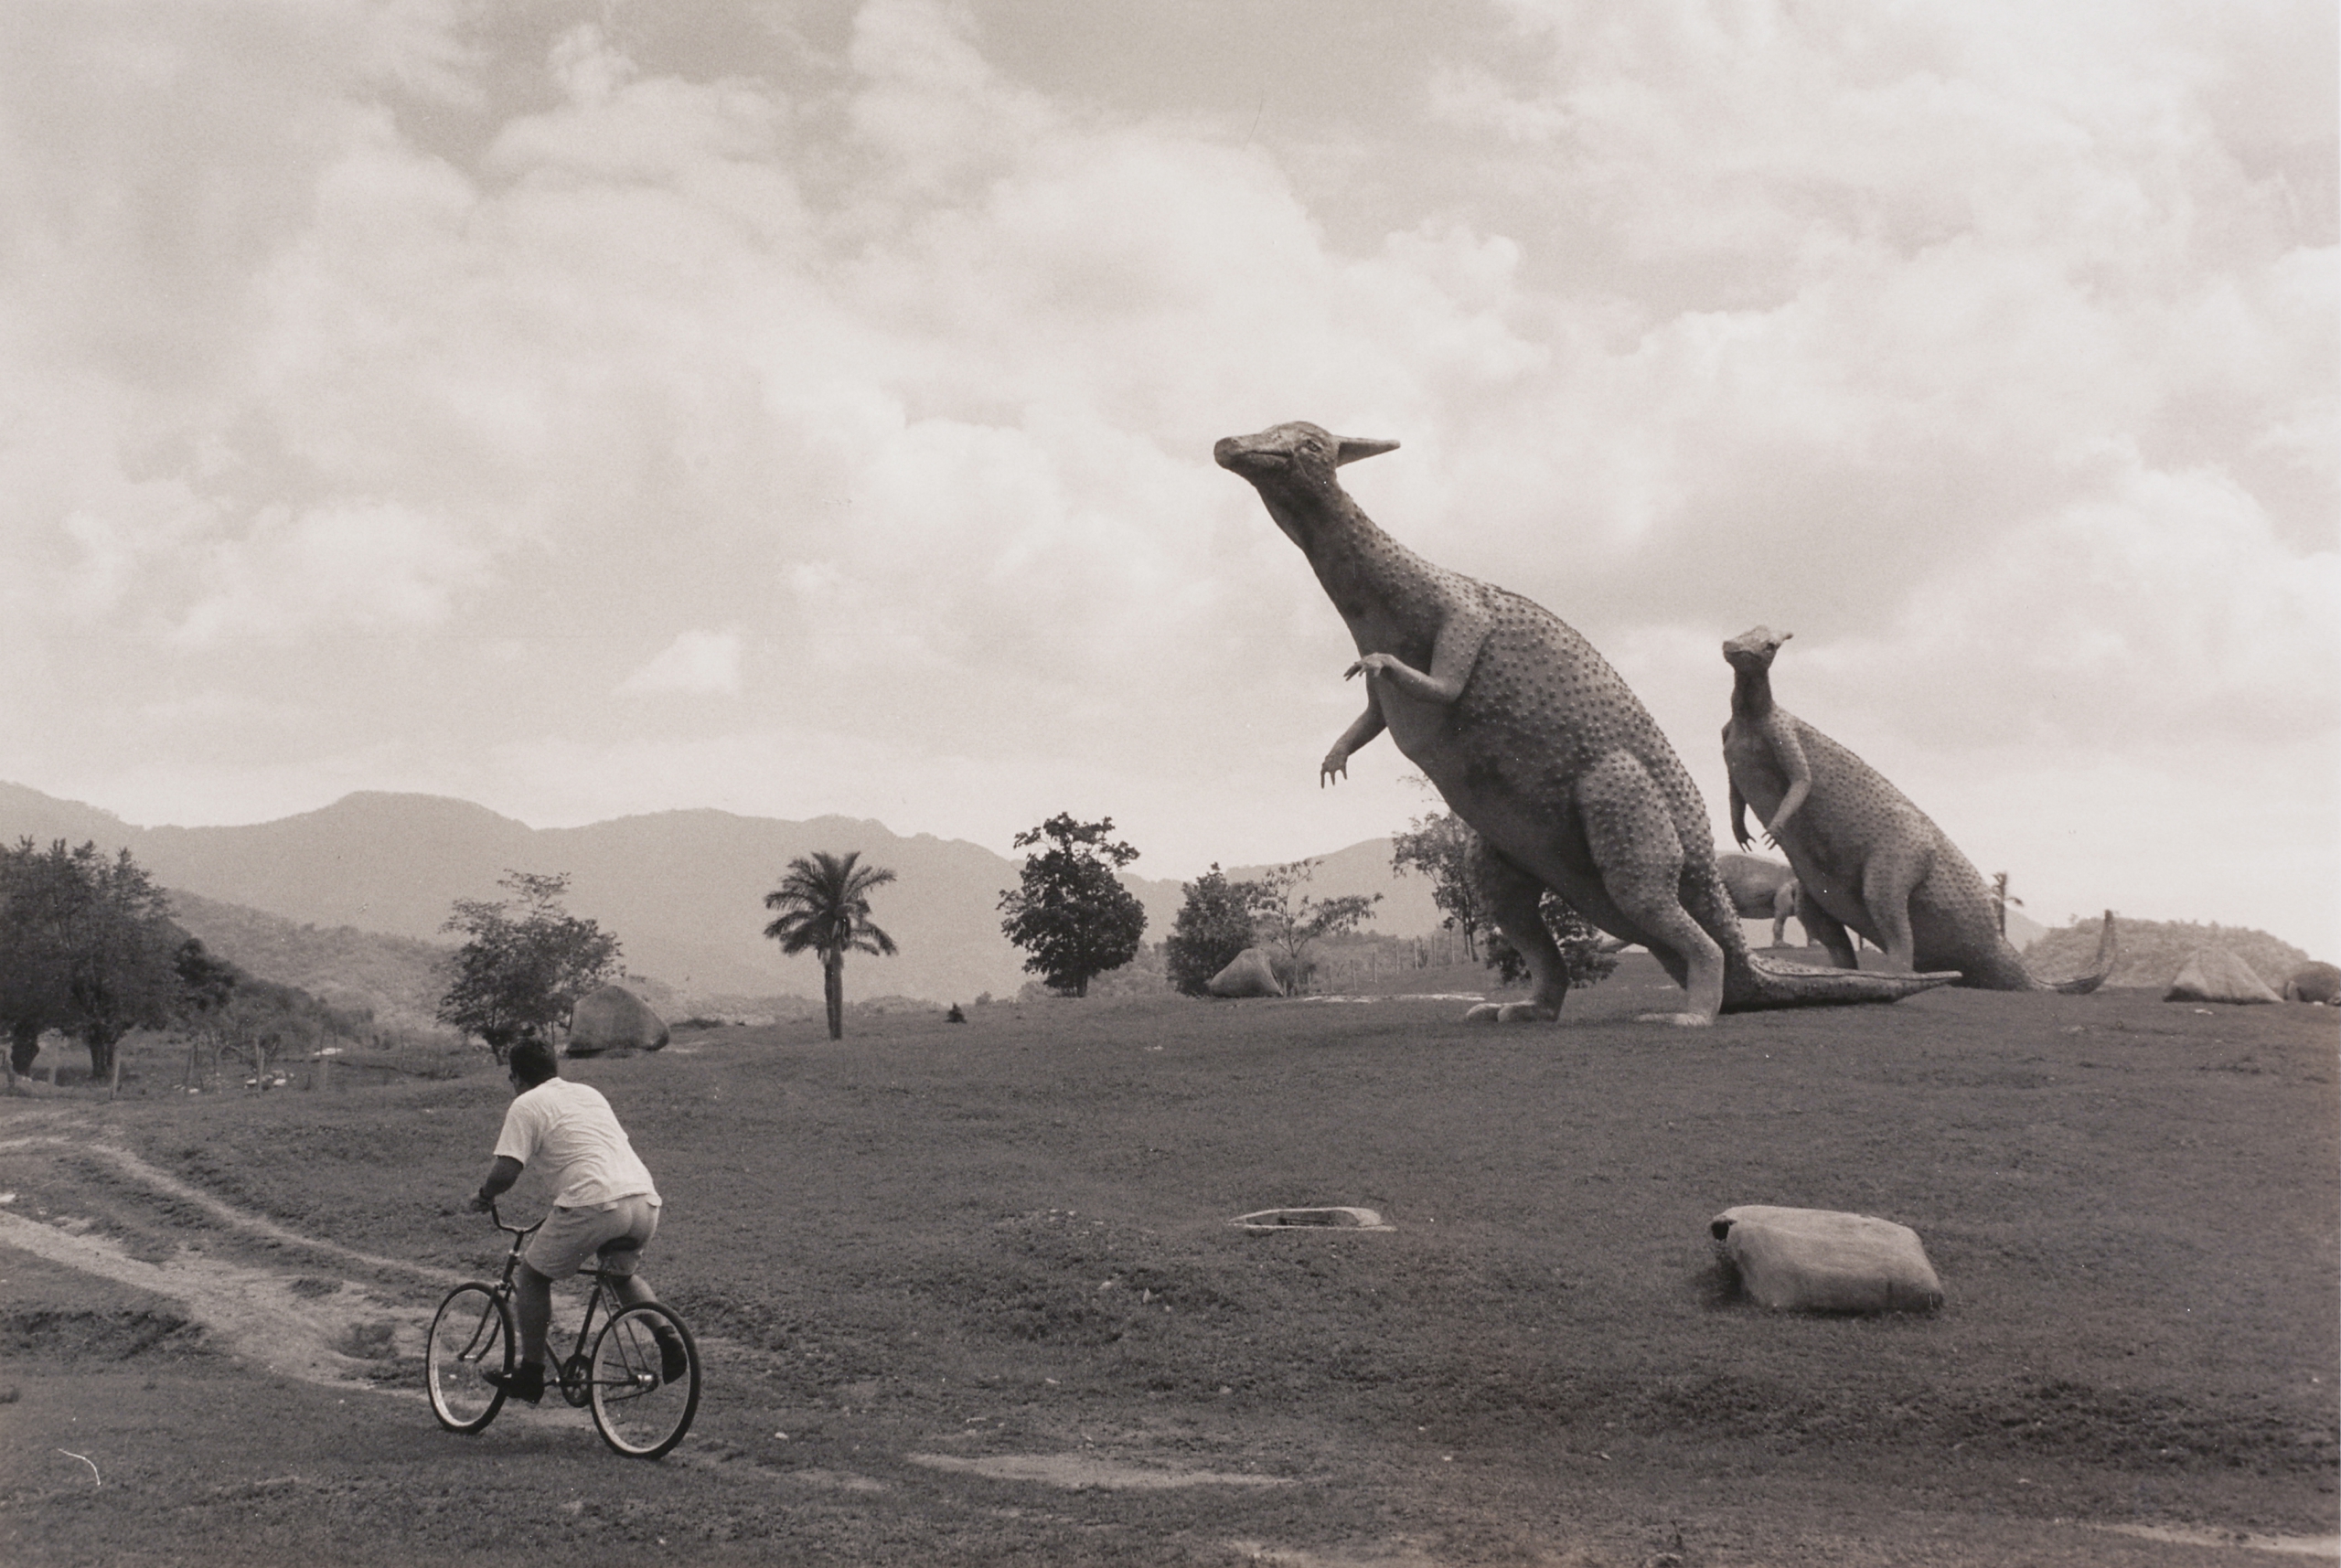 Tony Mendoza. Dinosaurs near Guantanamo Bay, from the Cuba: Going Back series, 1996. © Tony Mendoza. Collection of Lehigh University Art Galleries.